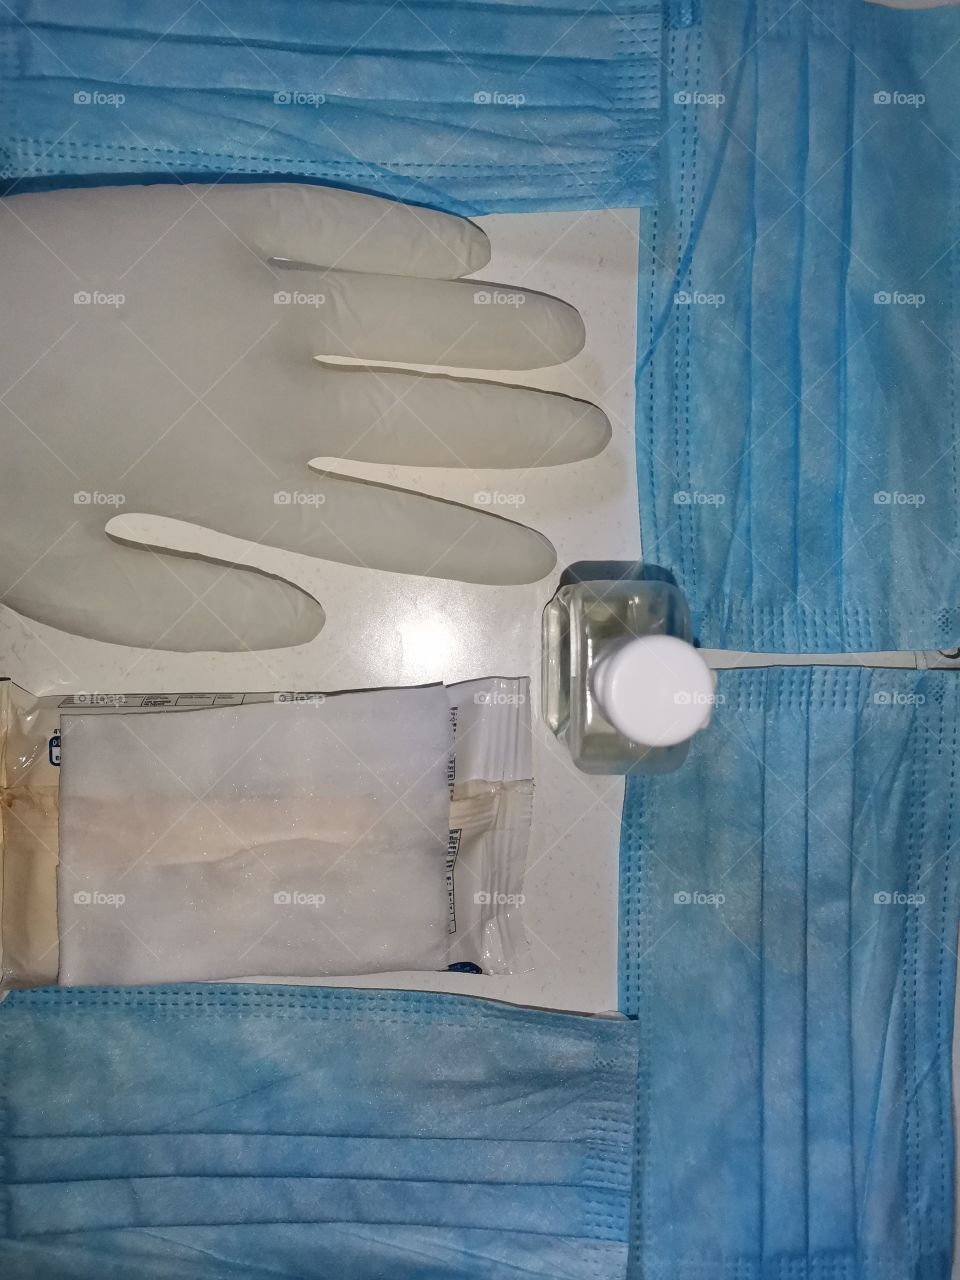 Mask disinfectant wet wipes virus gloves disease